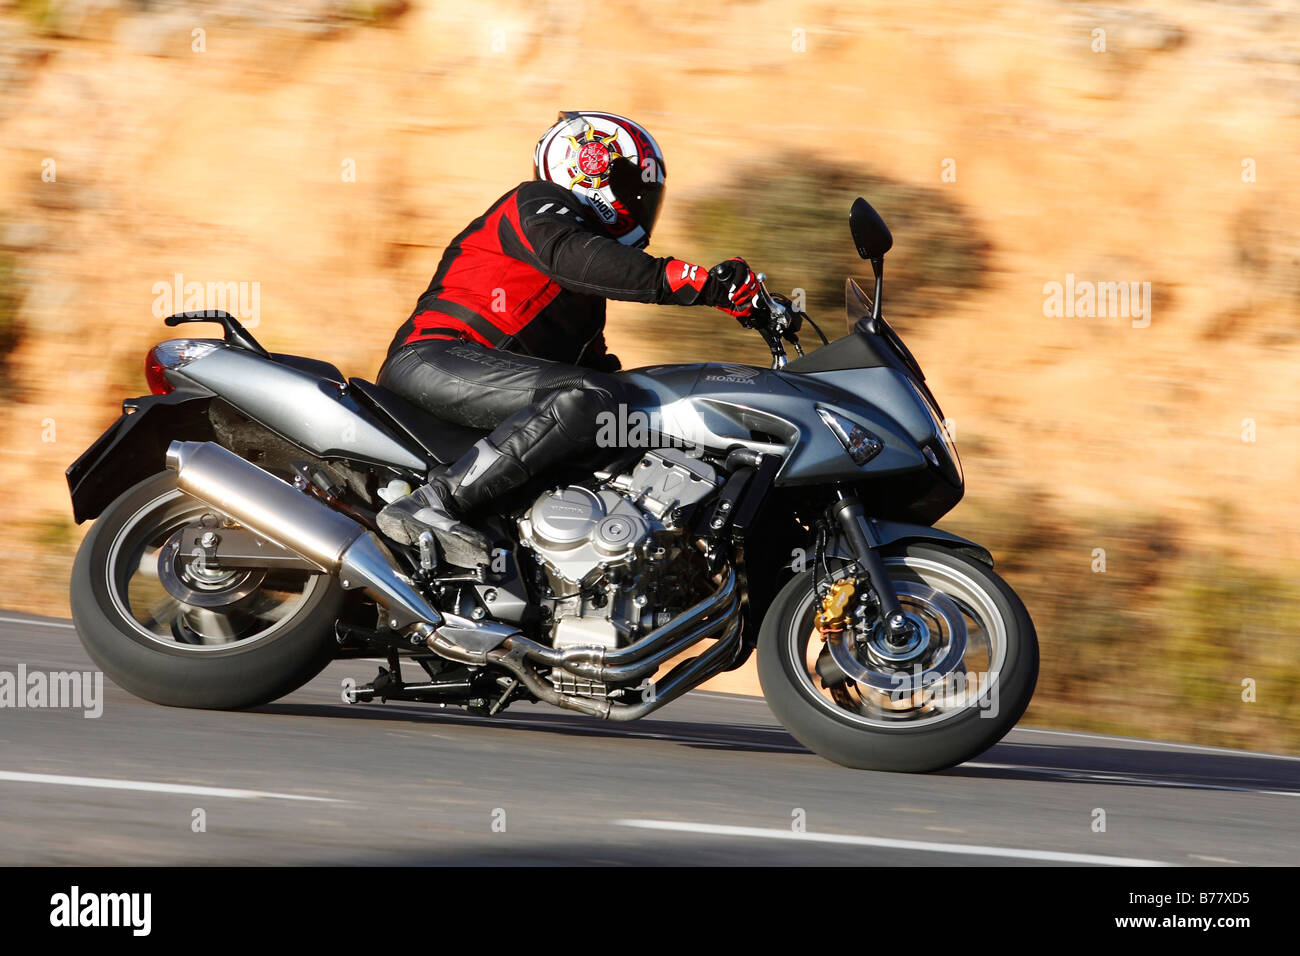 Motorbike, Honda CBF 600, panning Stock Photo